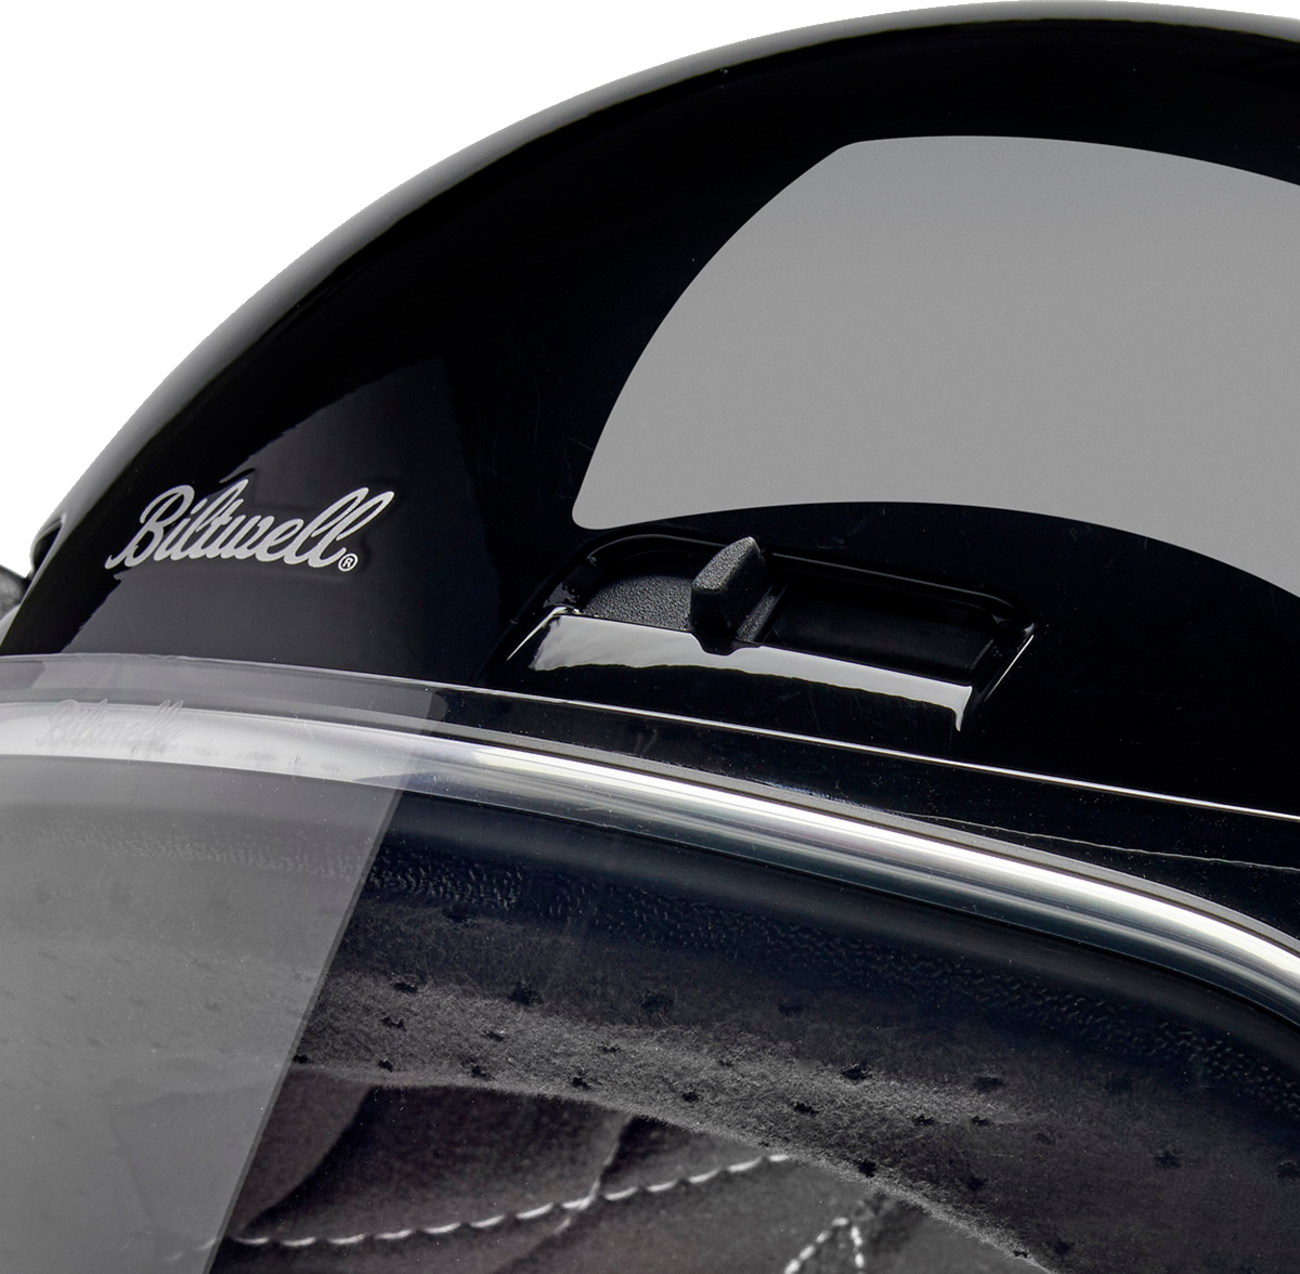 BILTWELL Gringo SV Helmet - Gloss Black - XL 1006-102-505